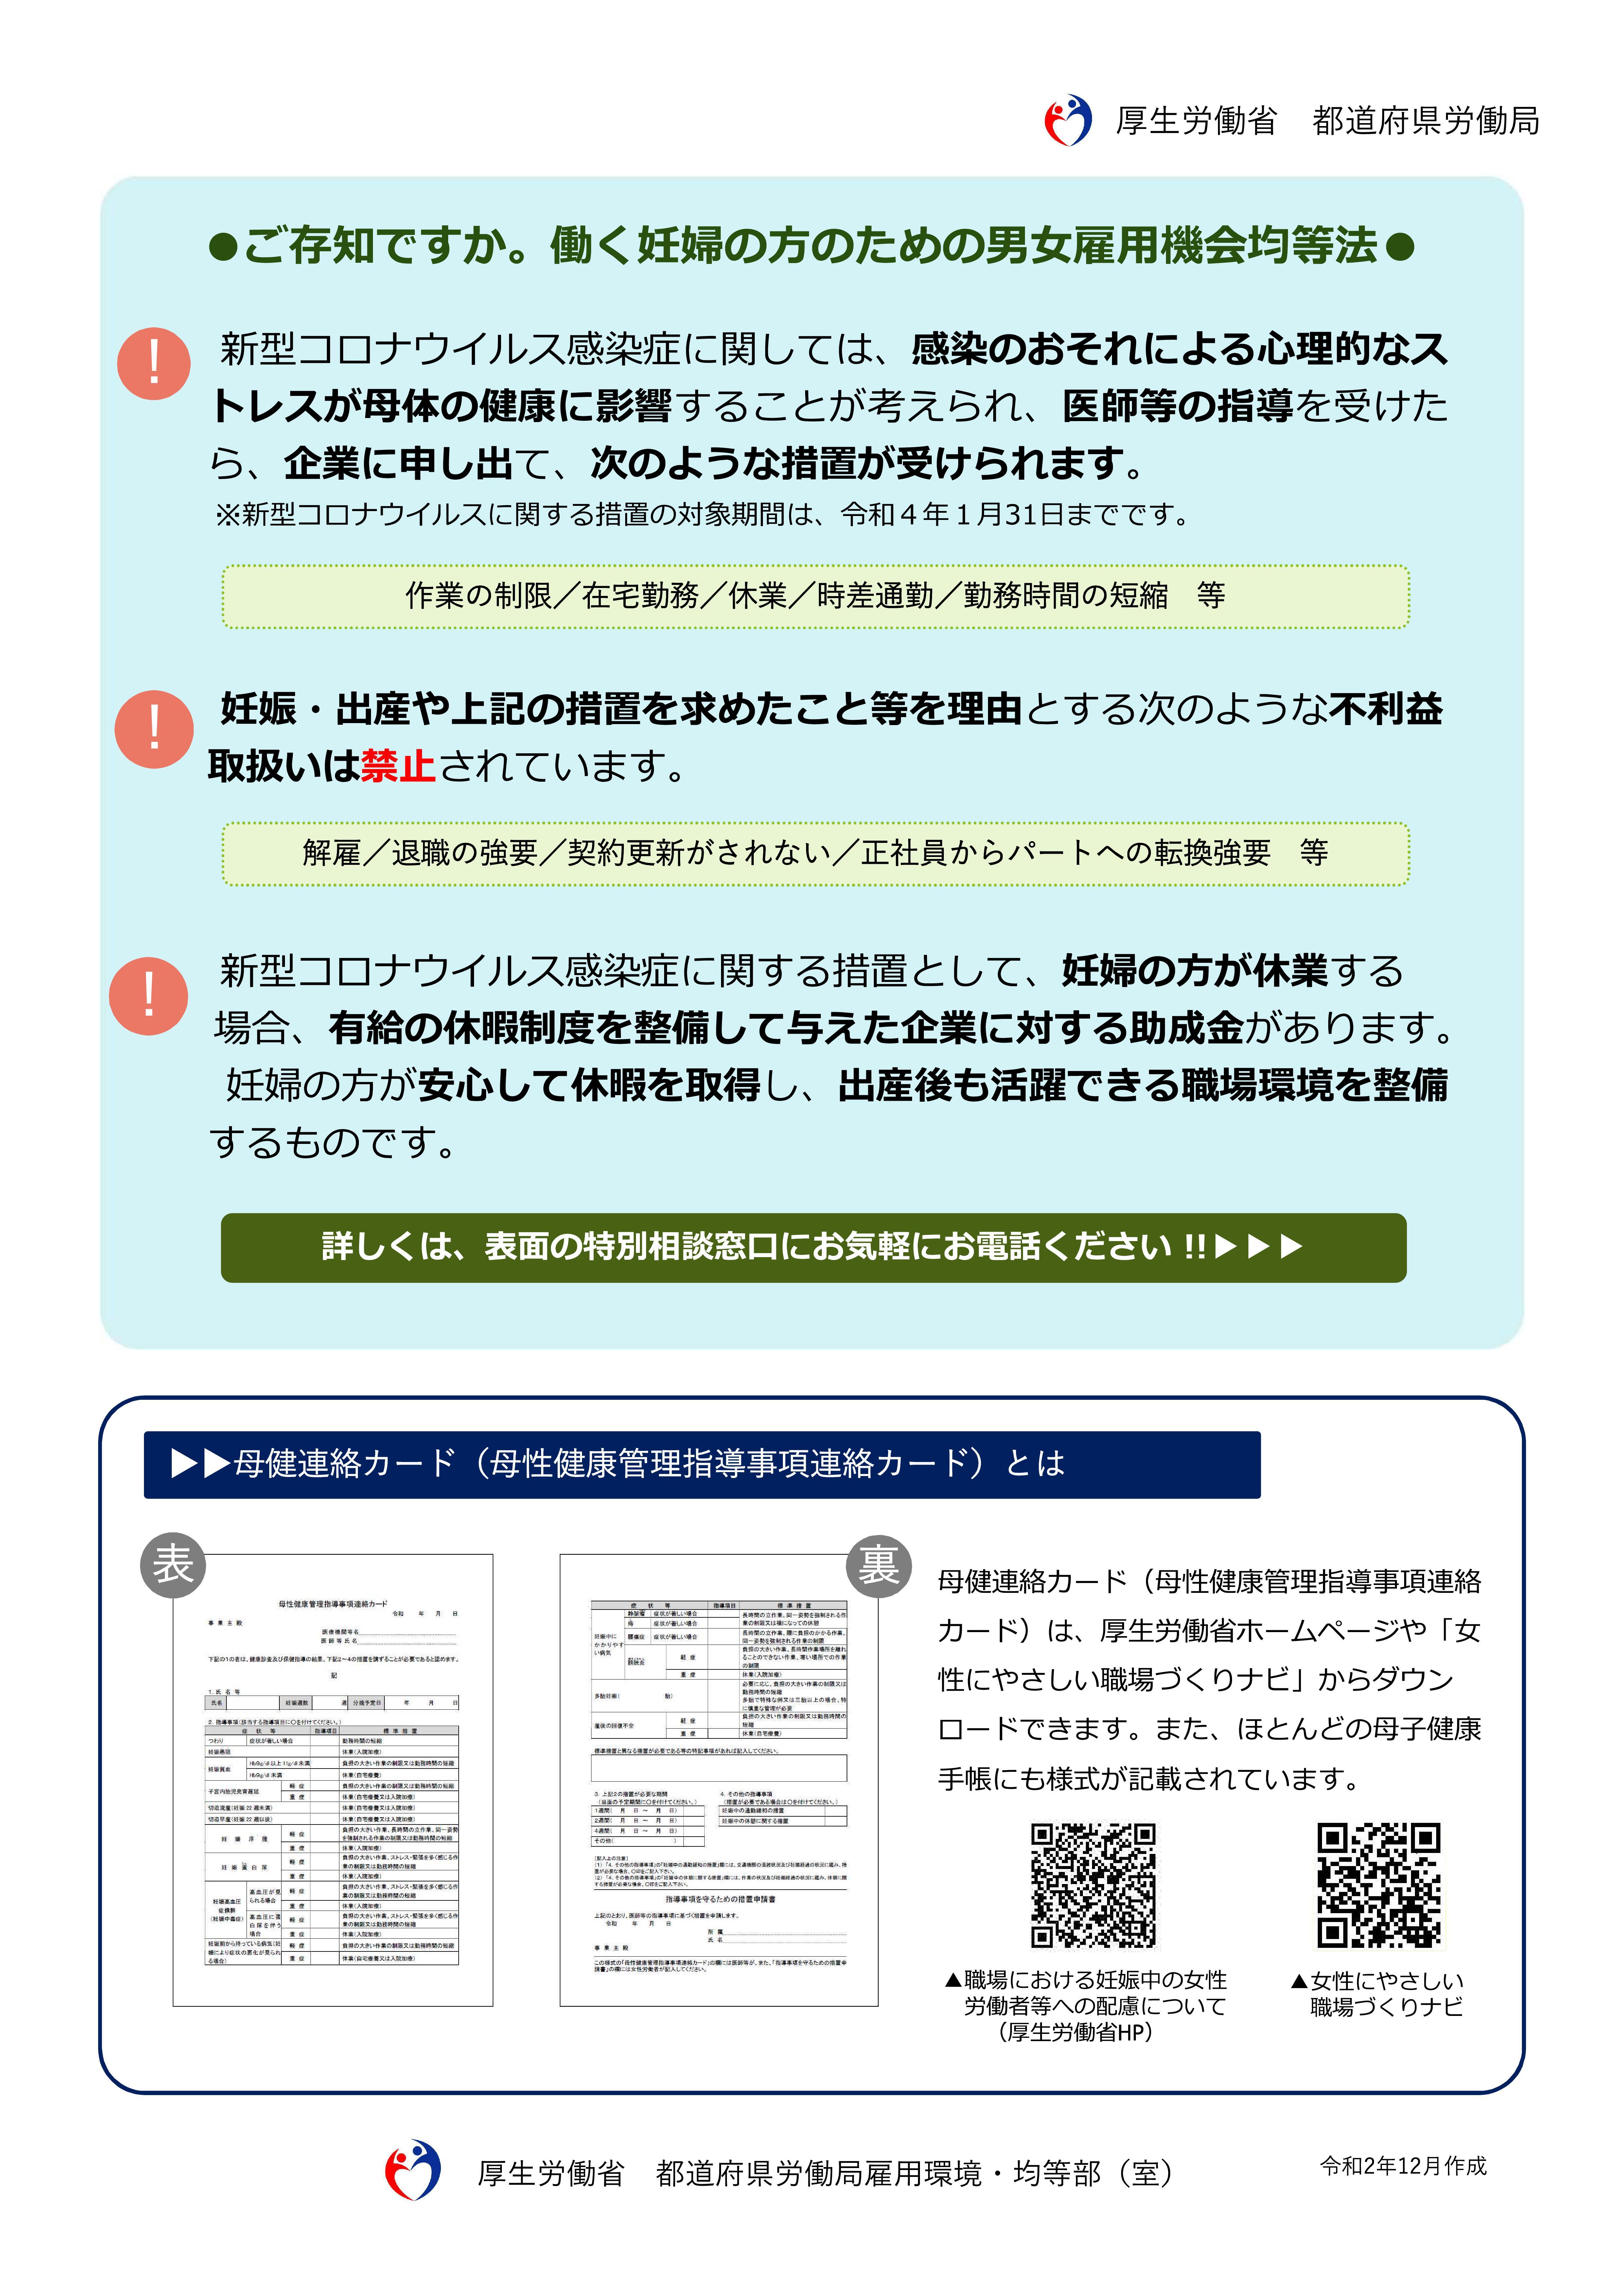 ウイルス 熊本 最新 情報 コロナ 熊本県 新型コロナ関連情報